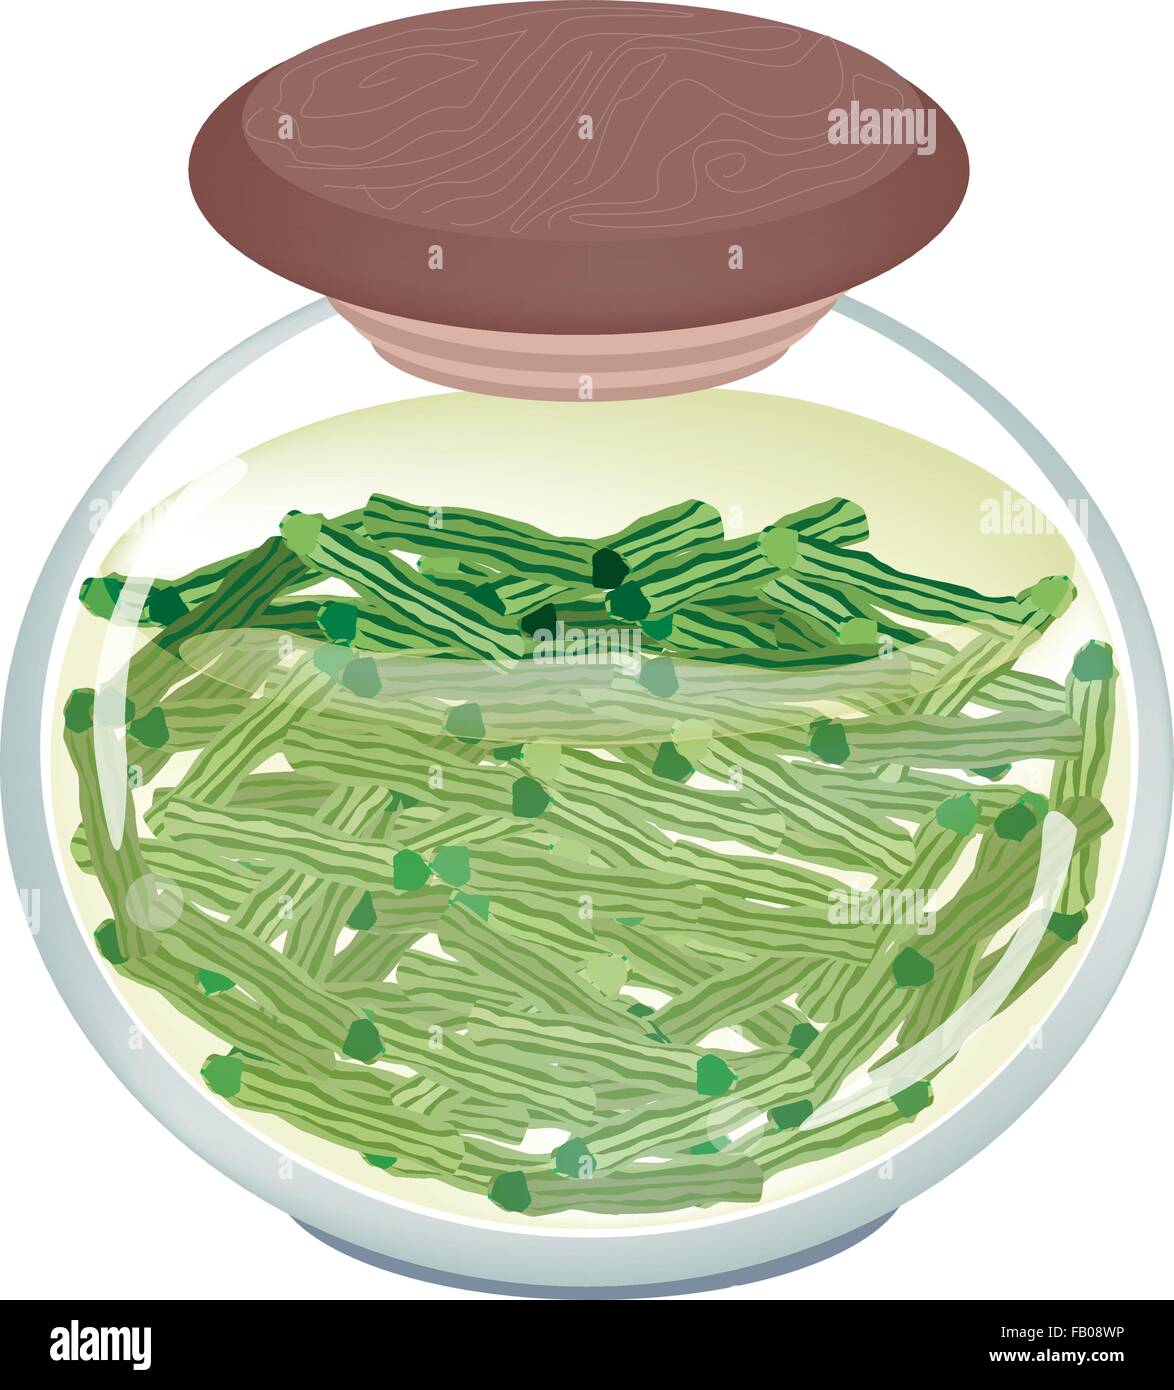 Gemüse- und Kräutergarten, Illustration der leckere eingelegte Moringa-Pod in Salzlake, Essig und Zucker in einem Glas Jar Isolated on White Stock Vektor